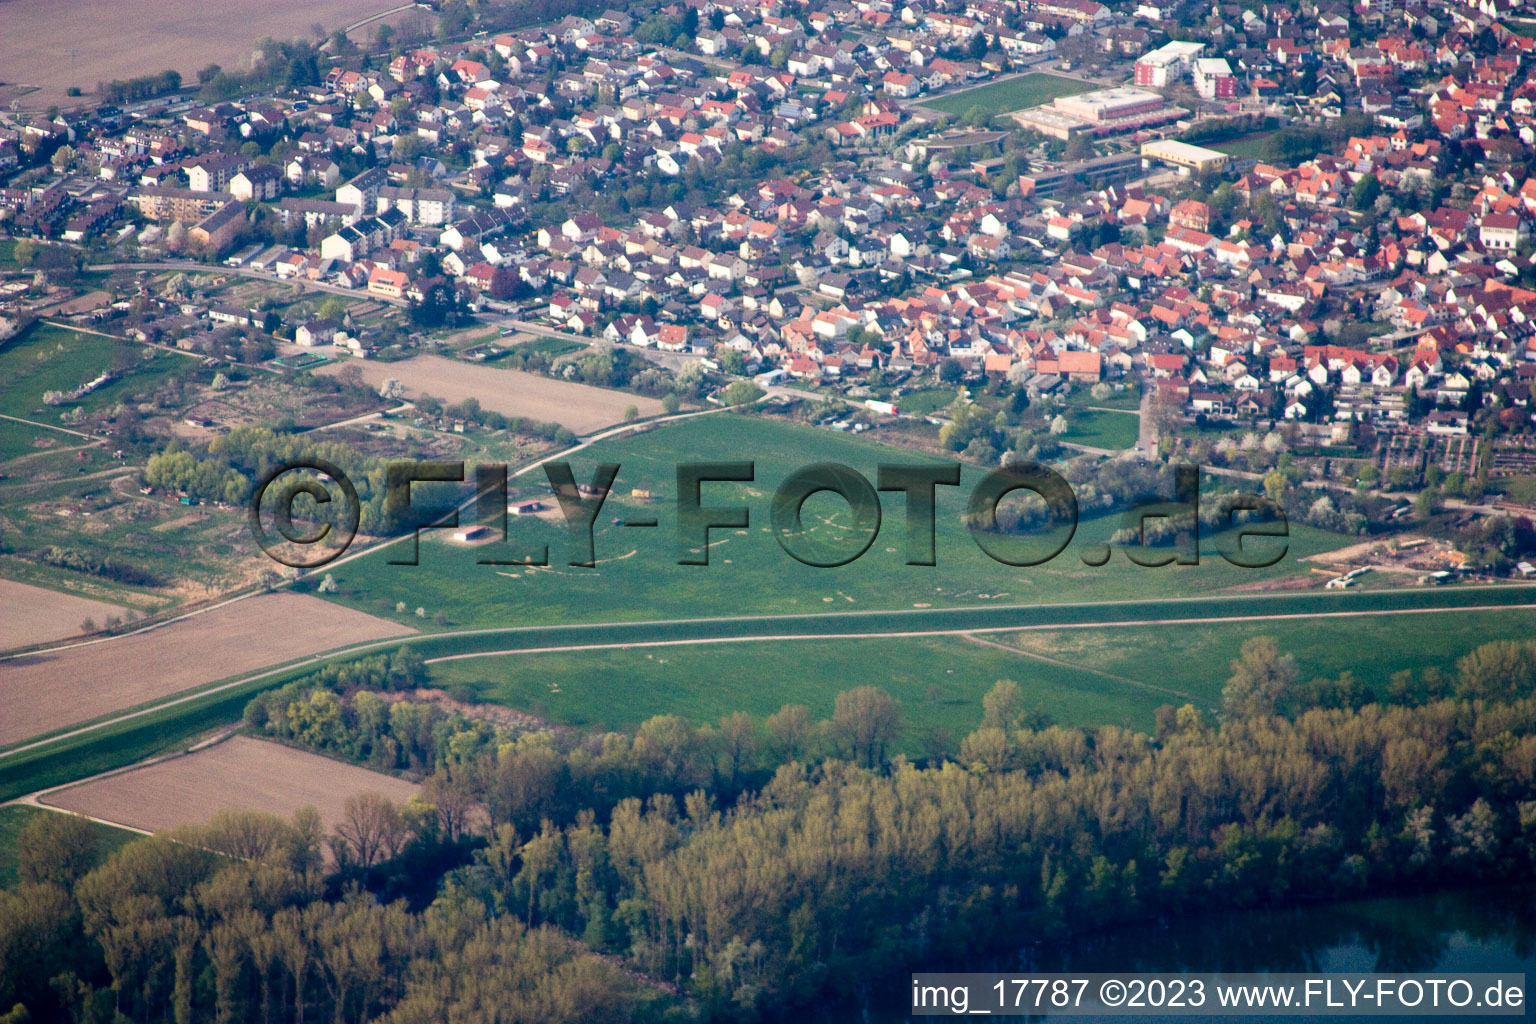 Neuburg dans le département Rhénanie-Palatinat, Allemagne vue d'en haut